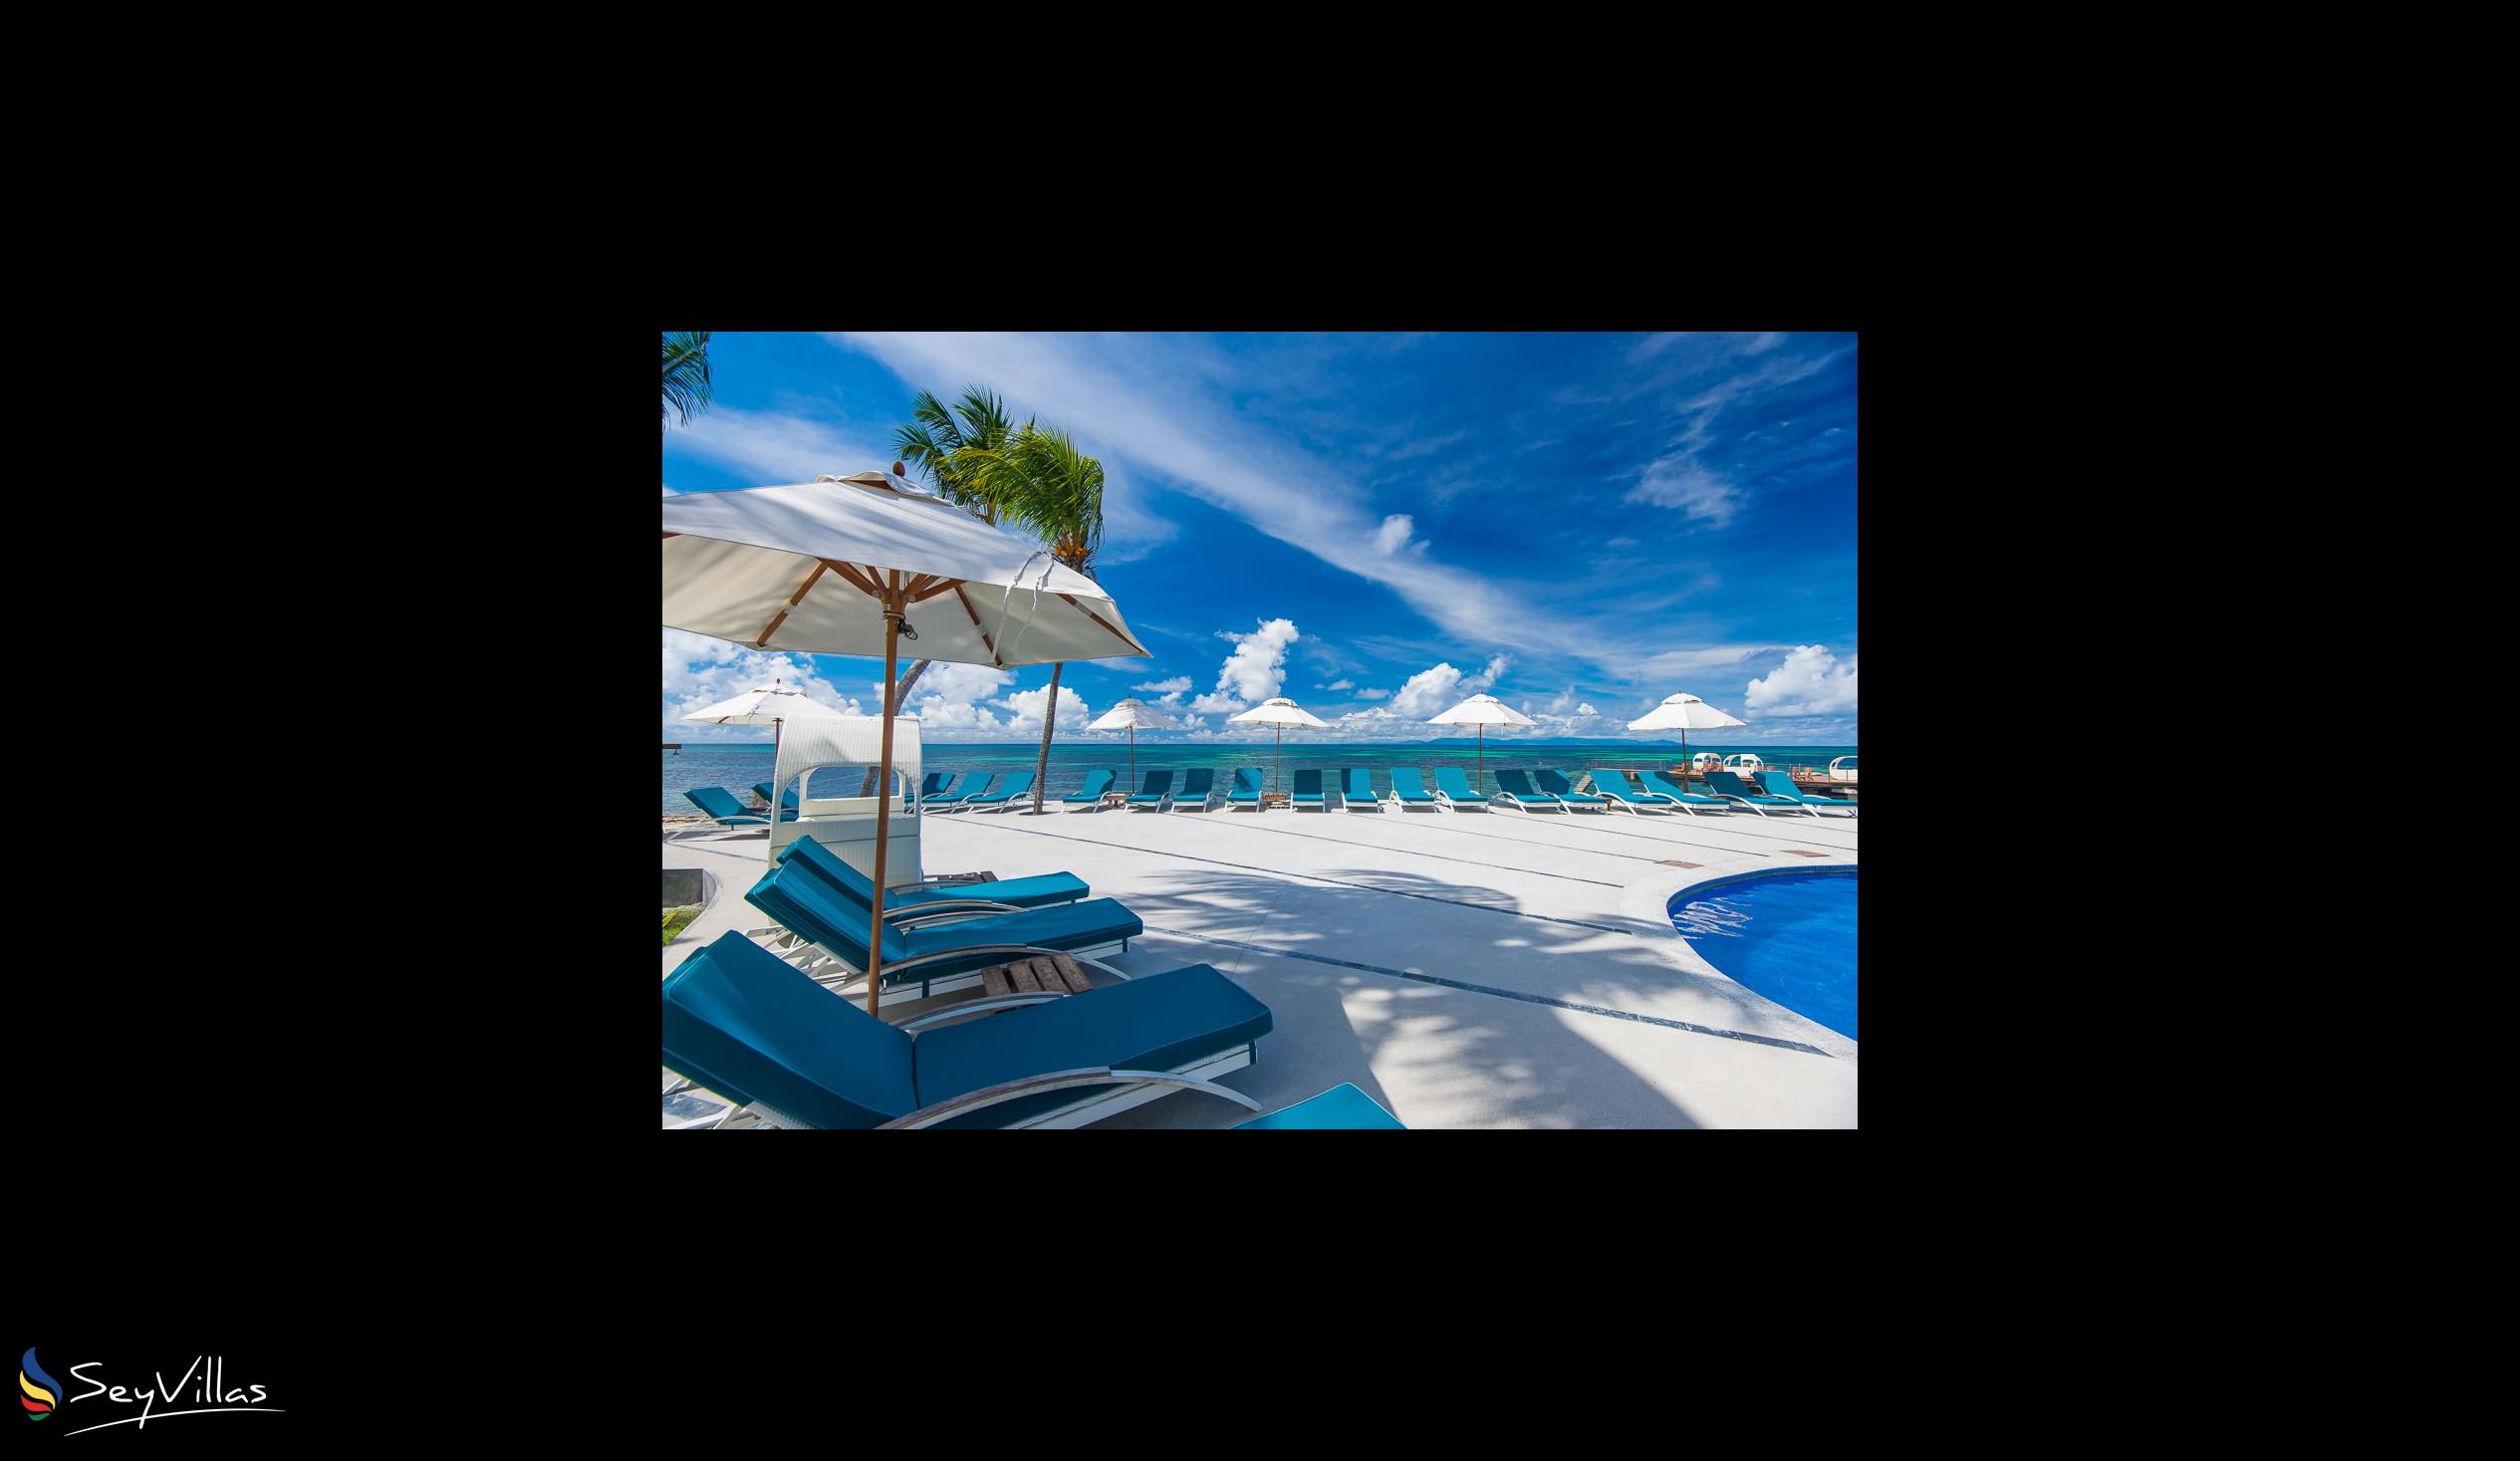 Foto 28: Coco de Mer & Black Parrot Suites - Aussenbereich - Praslin (Seychellen)